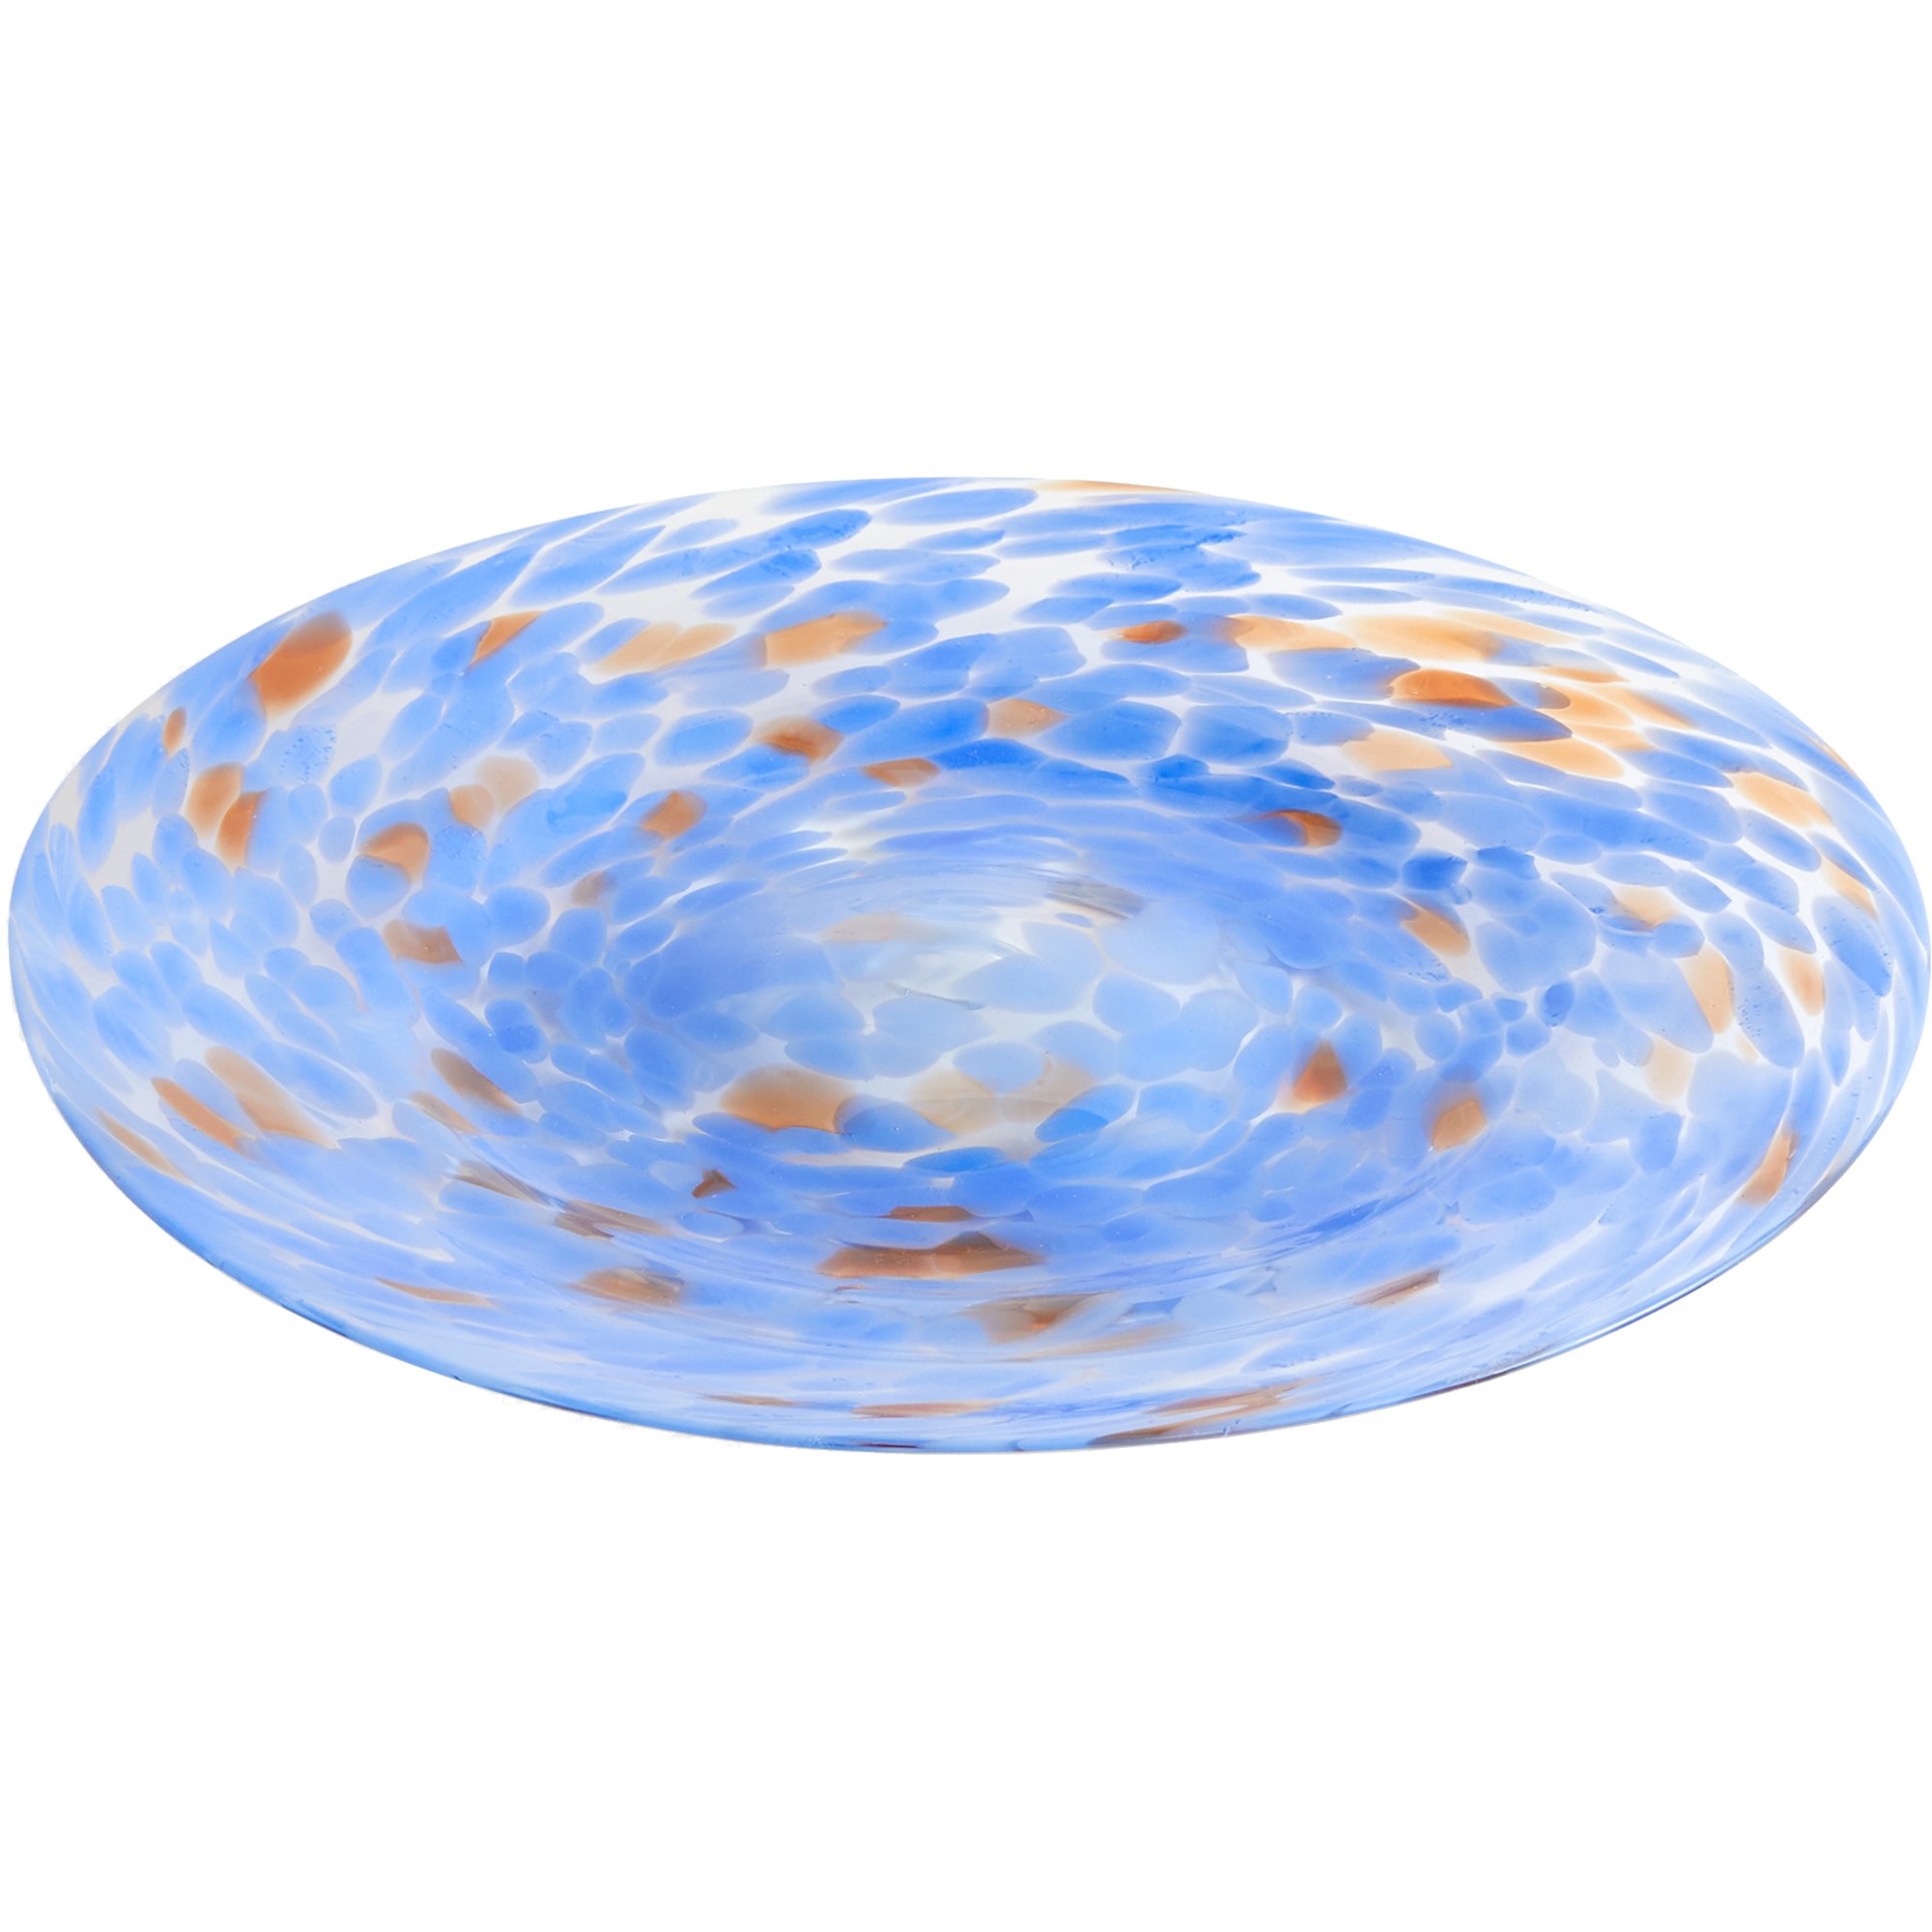 HAY Splash Platter serveringsfat 32 cm blå